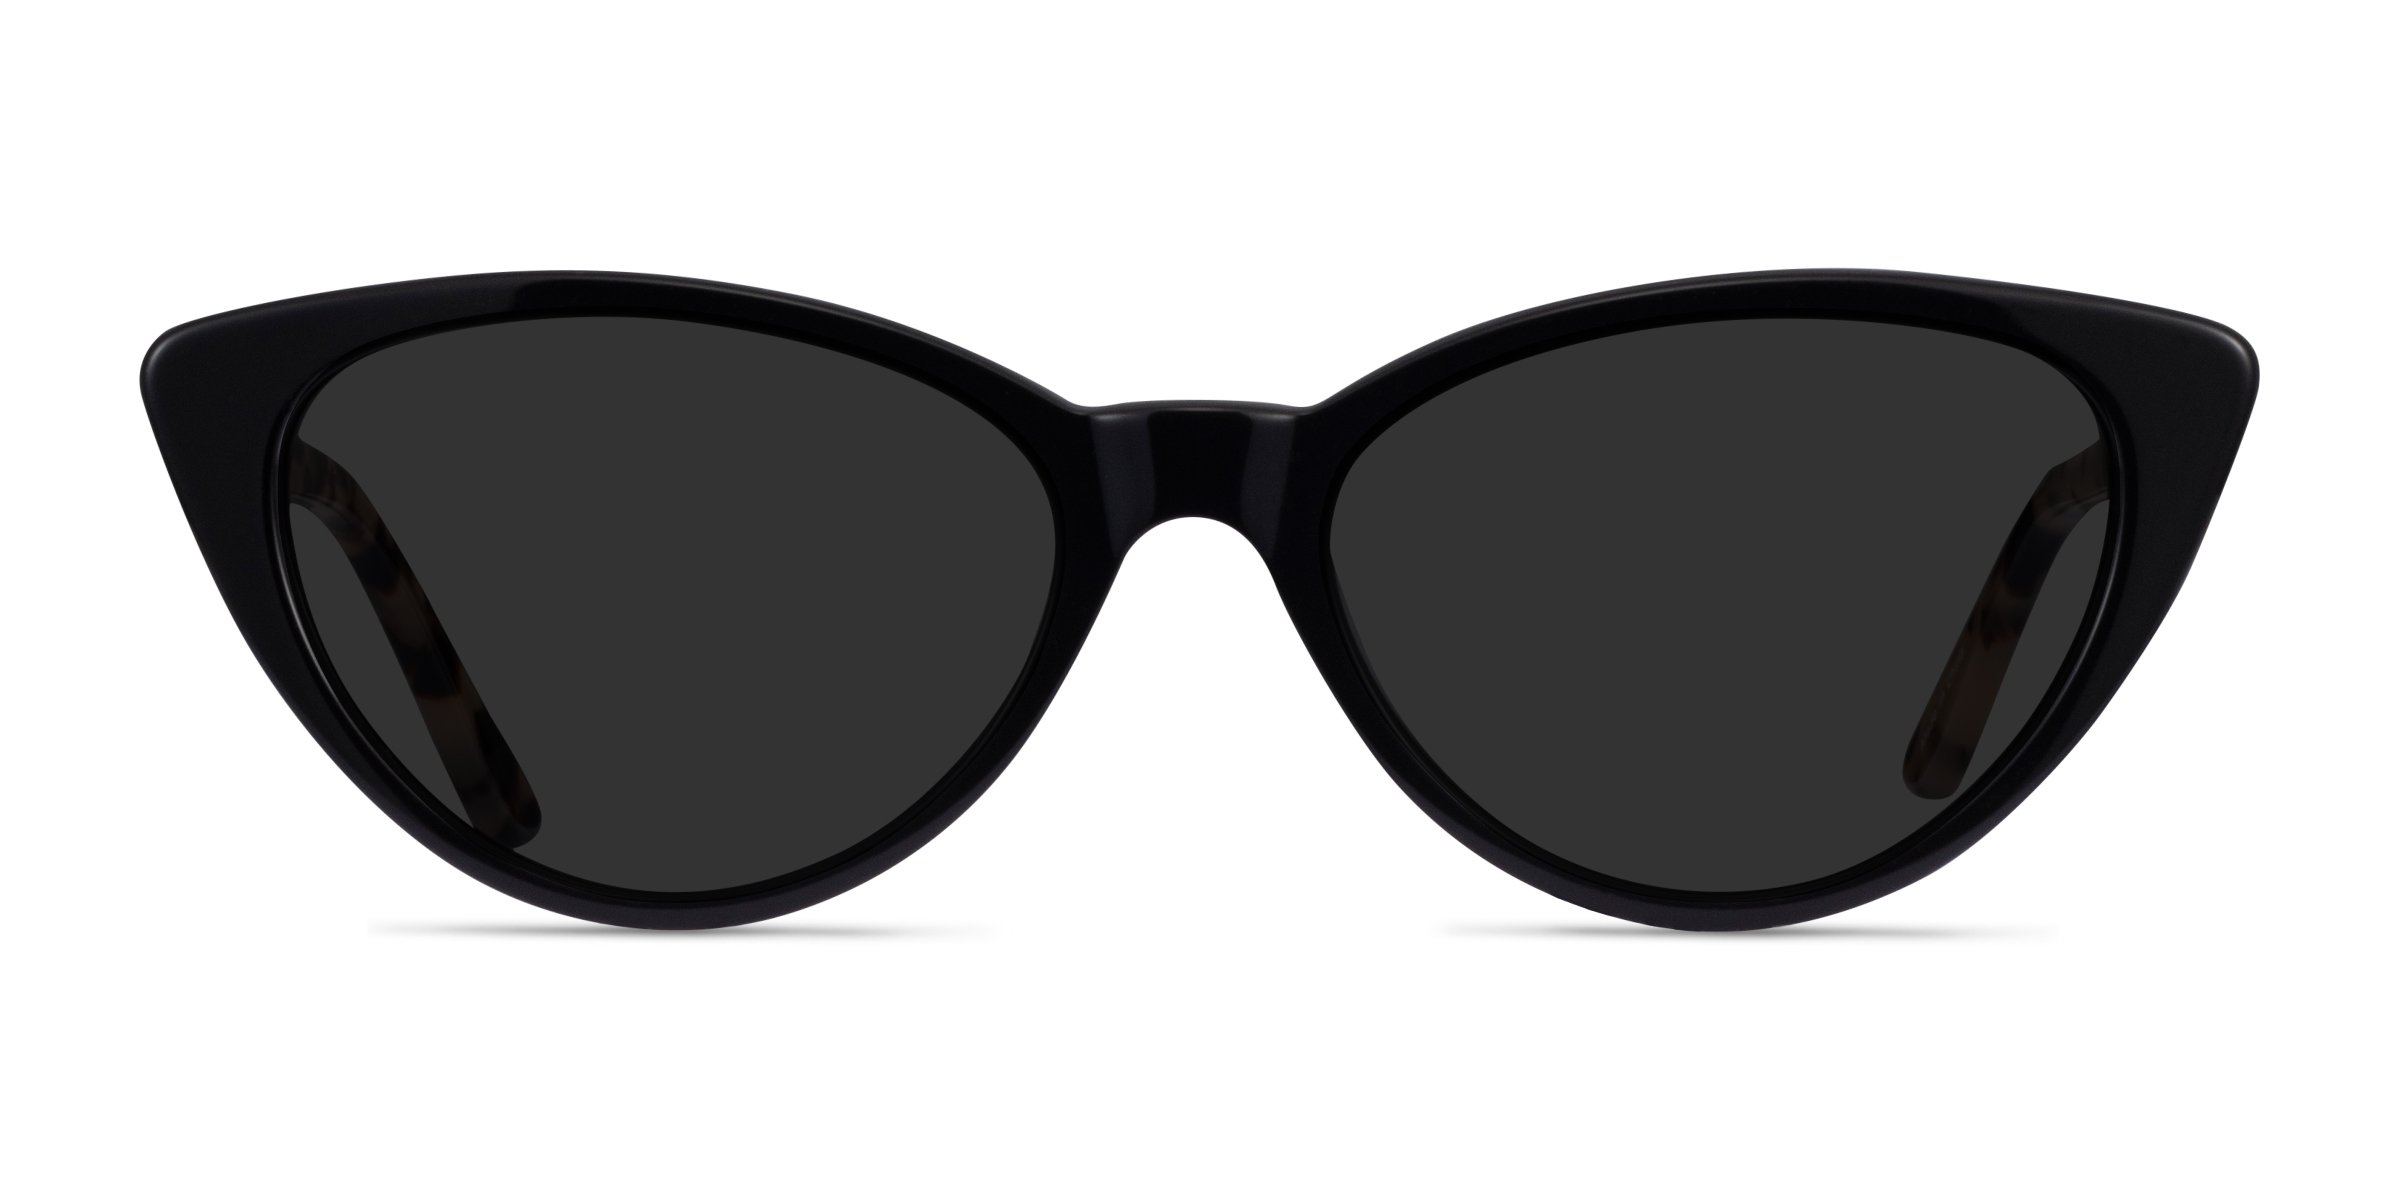 Jolie - Cat Eye Black Frame Sunglasses For Women | Eyebuydirect